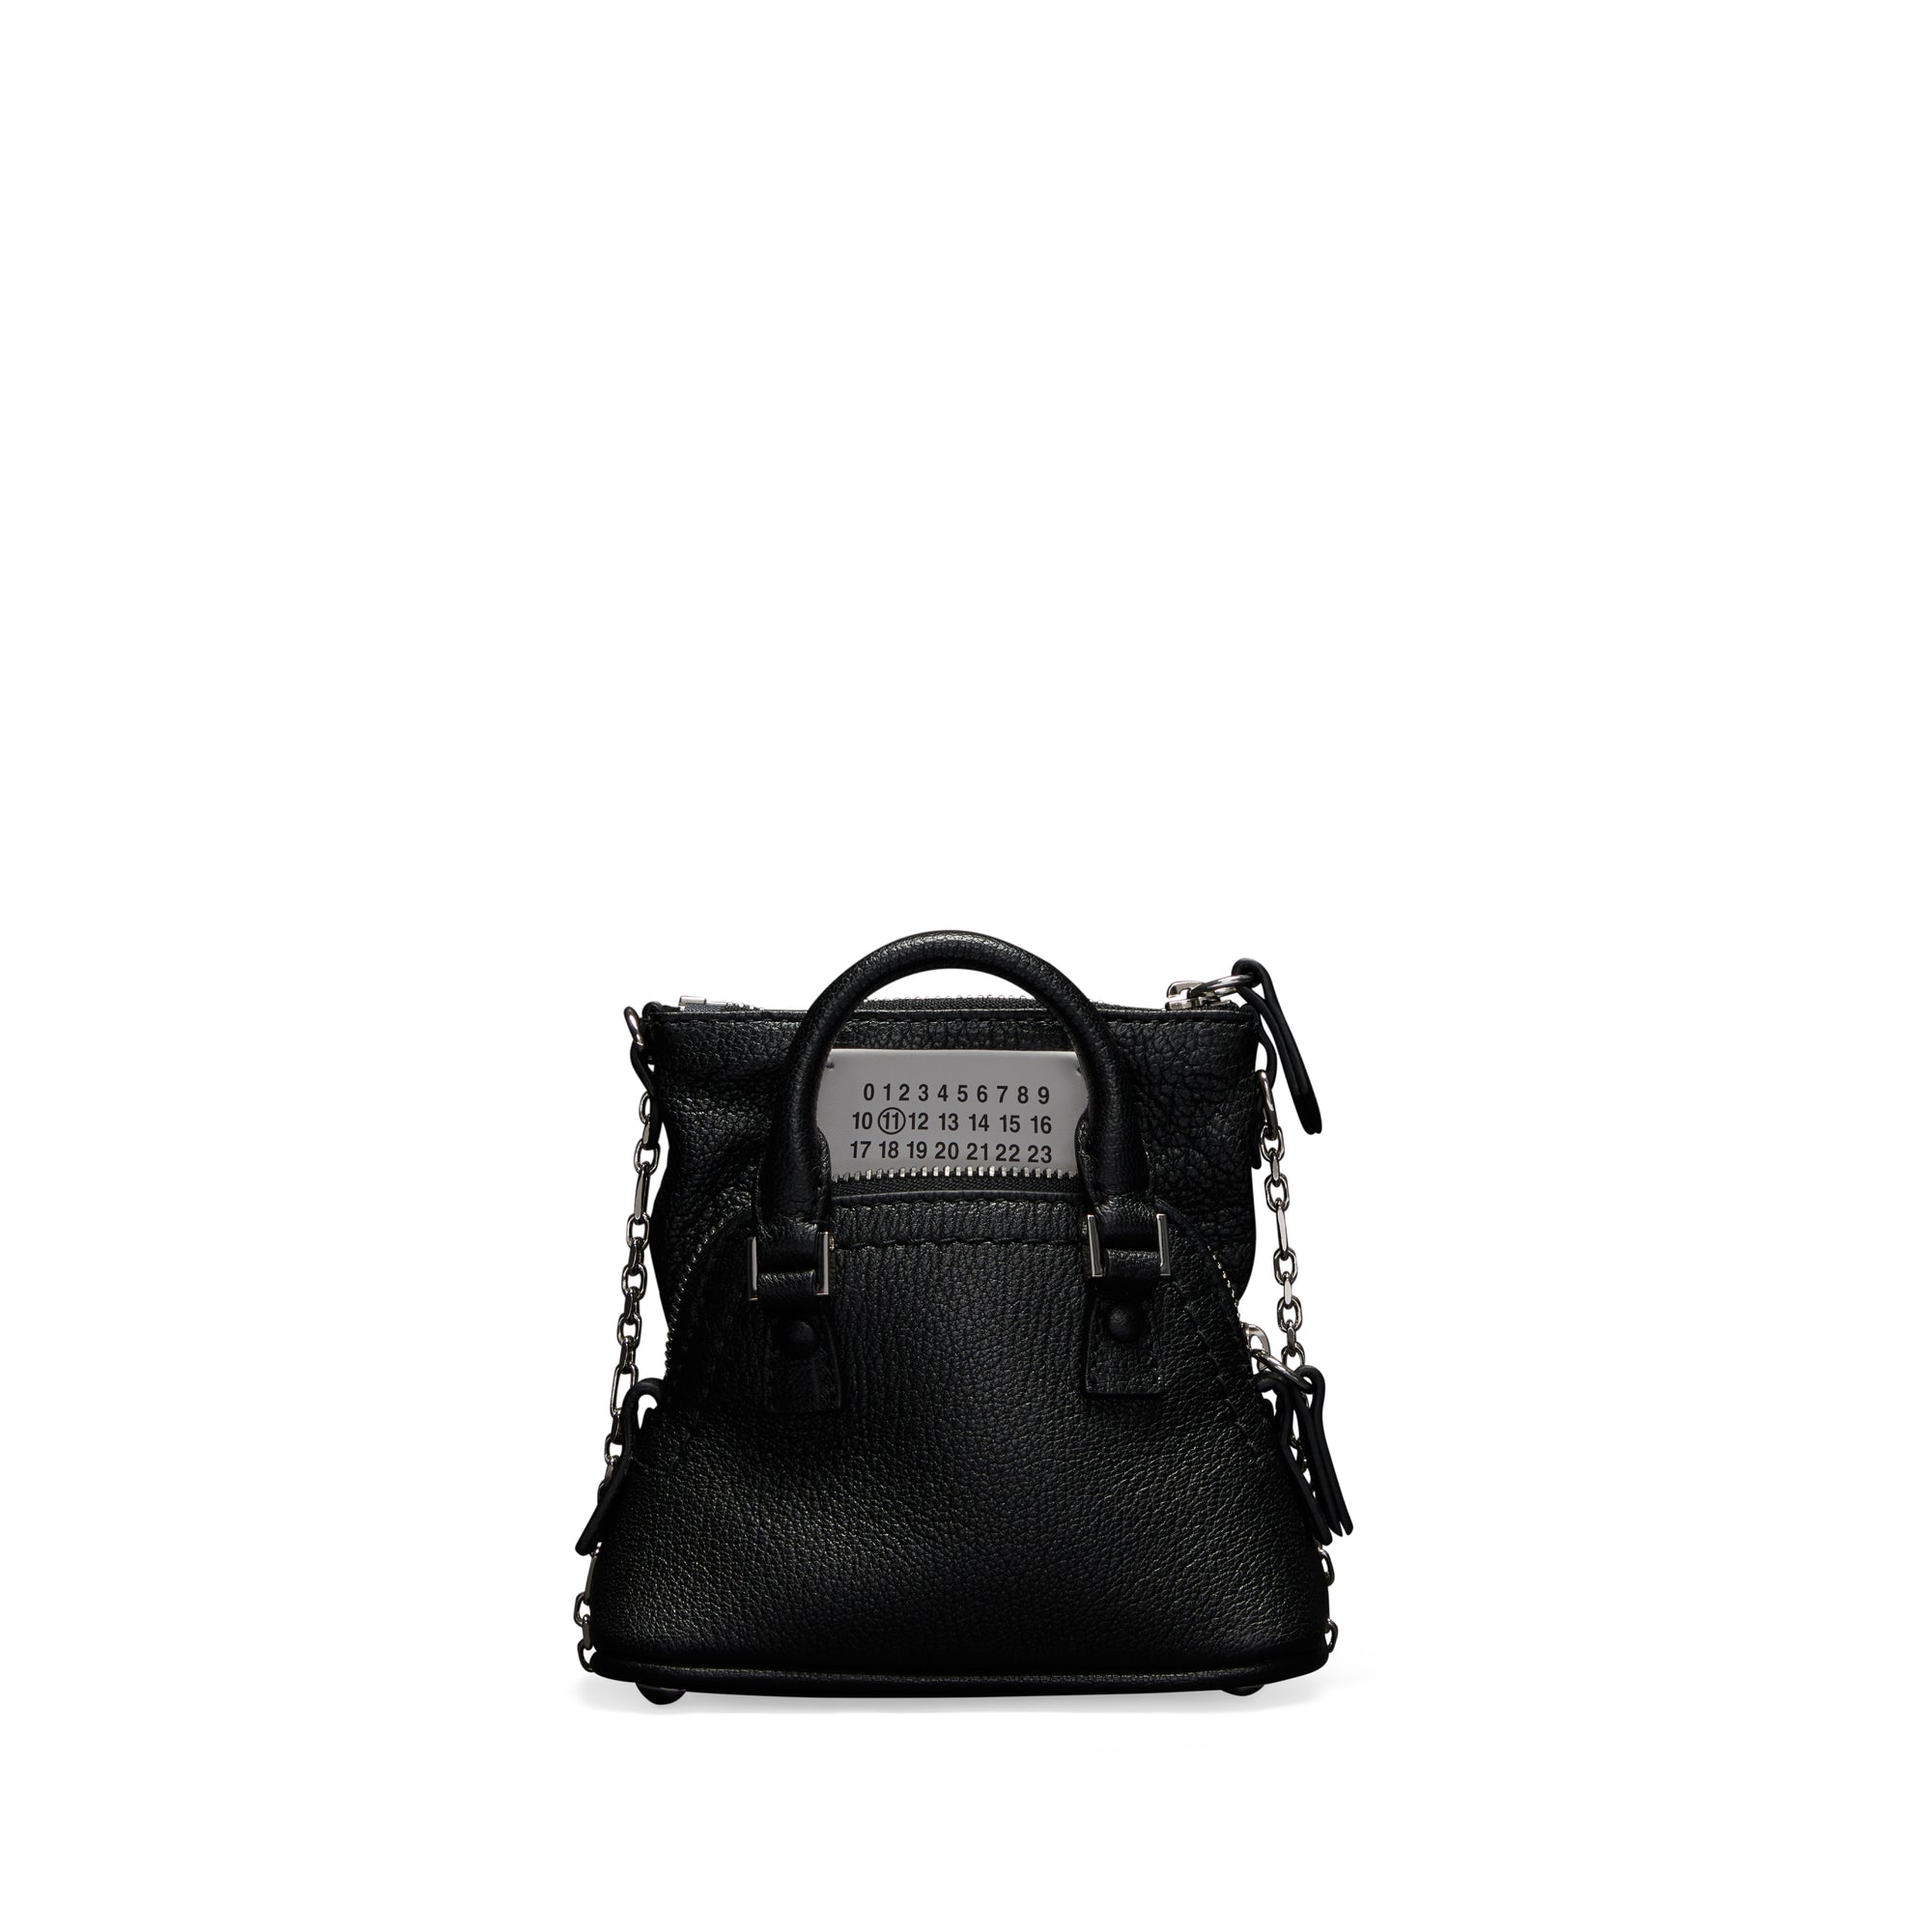 Maison Margiela - Women’s 5AC Classique Baby Bag - (Black) view 1